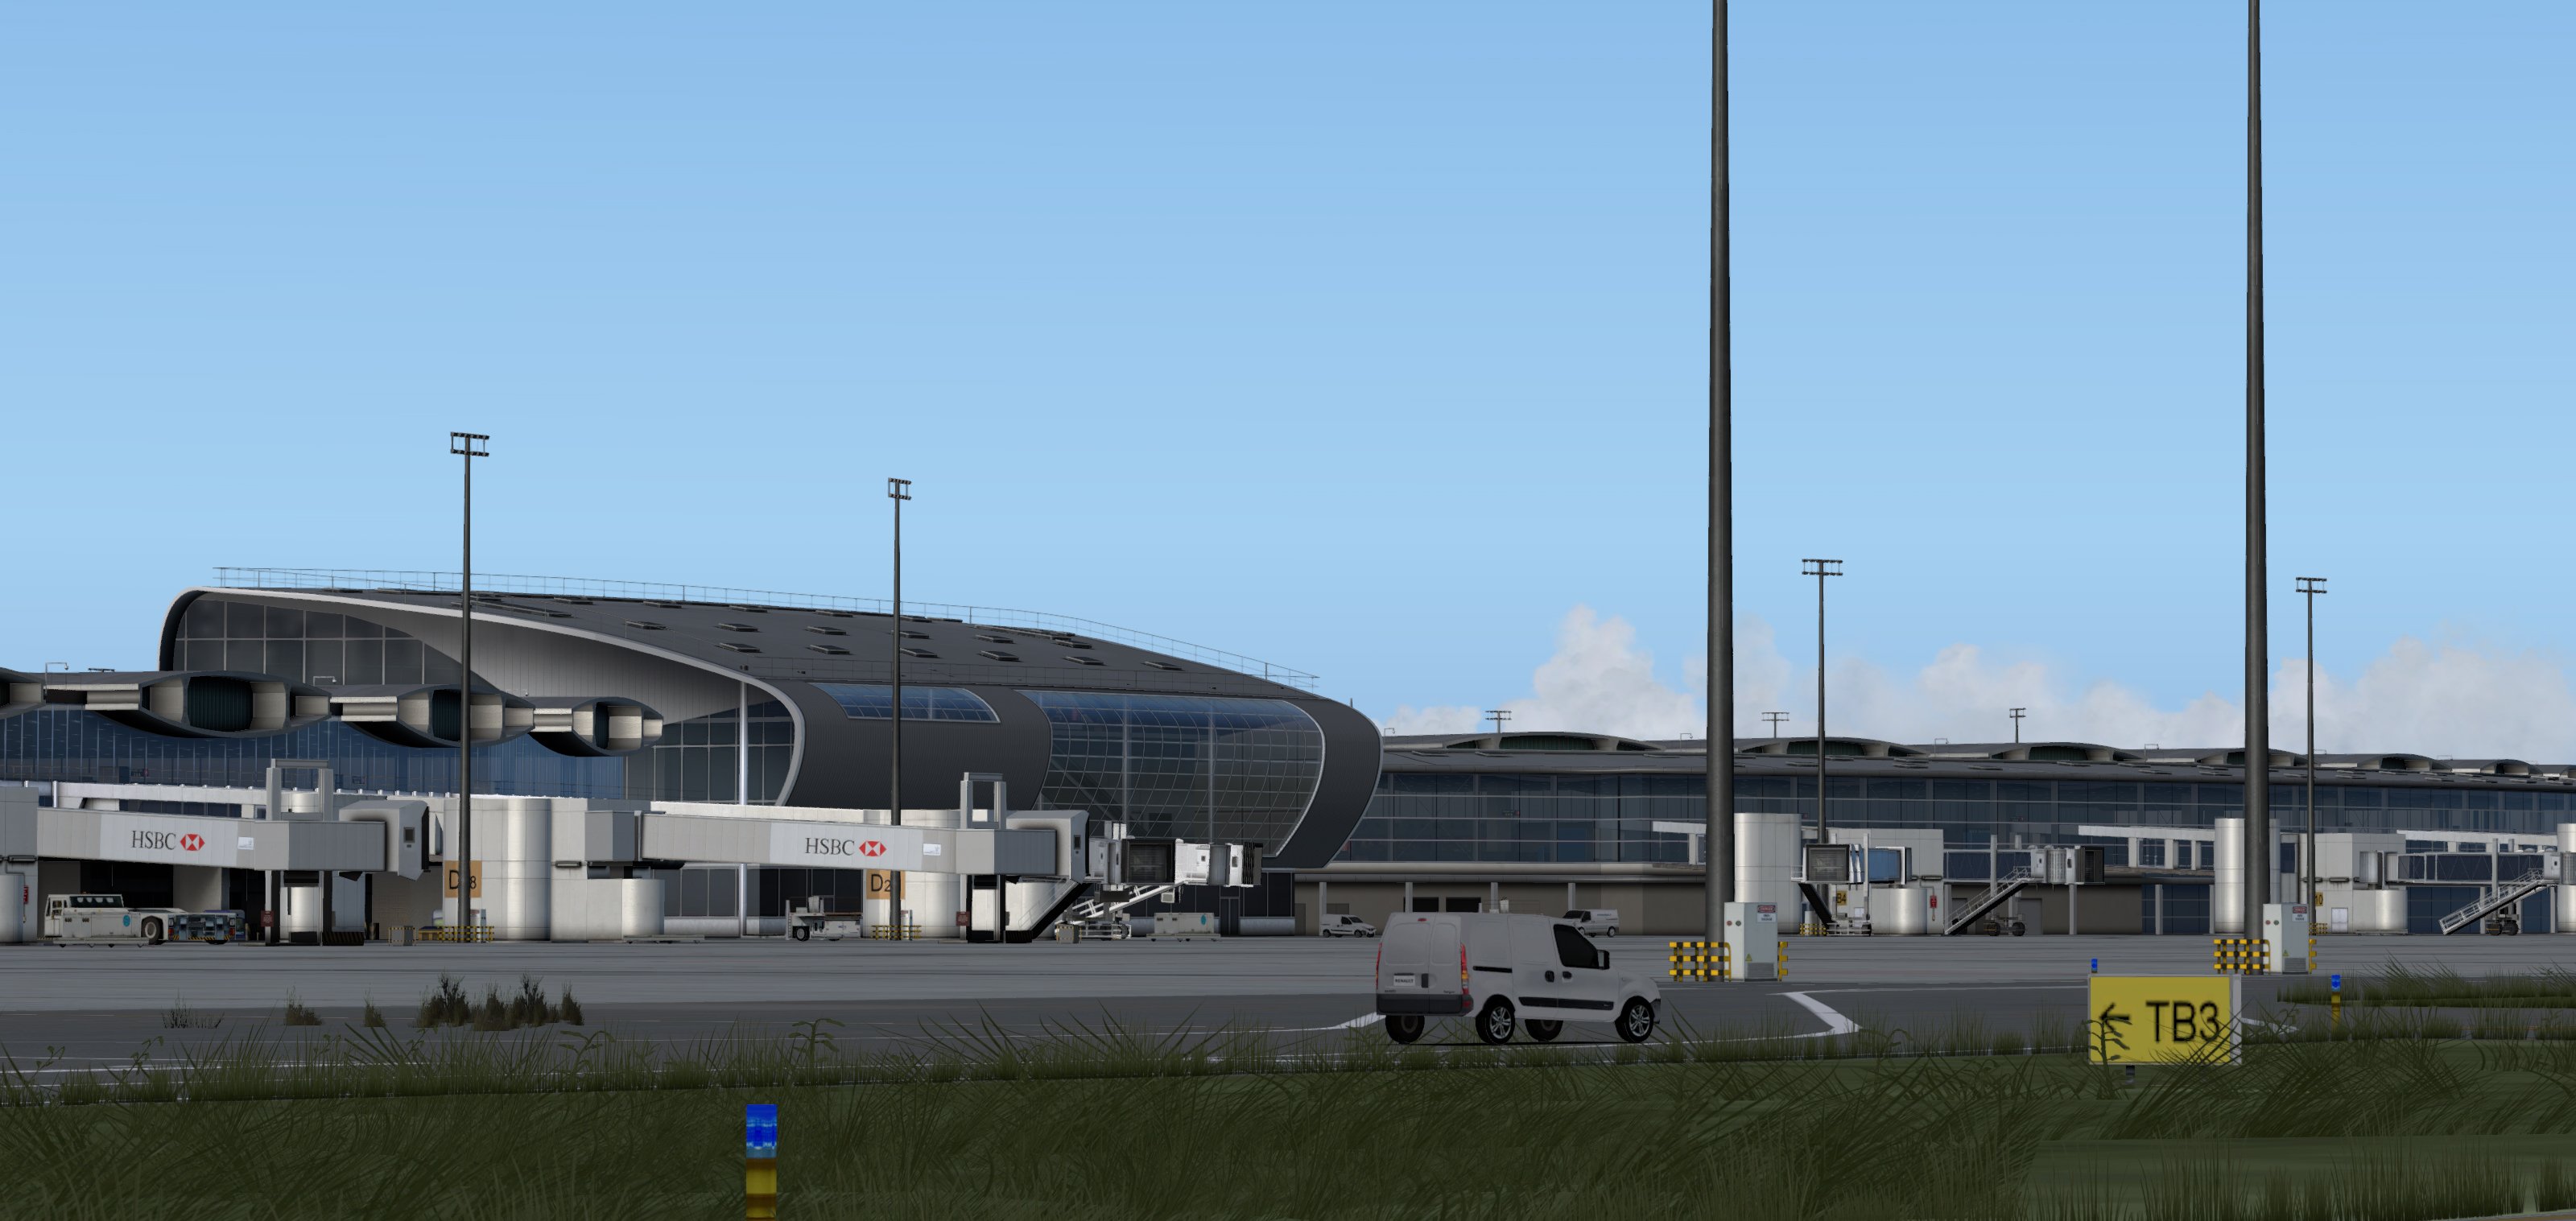 Paris Charles De Gaulle Airport - 3D Model by 3dstudio